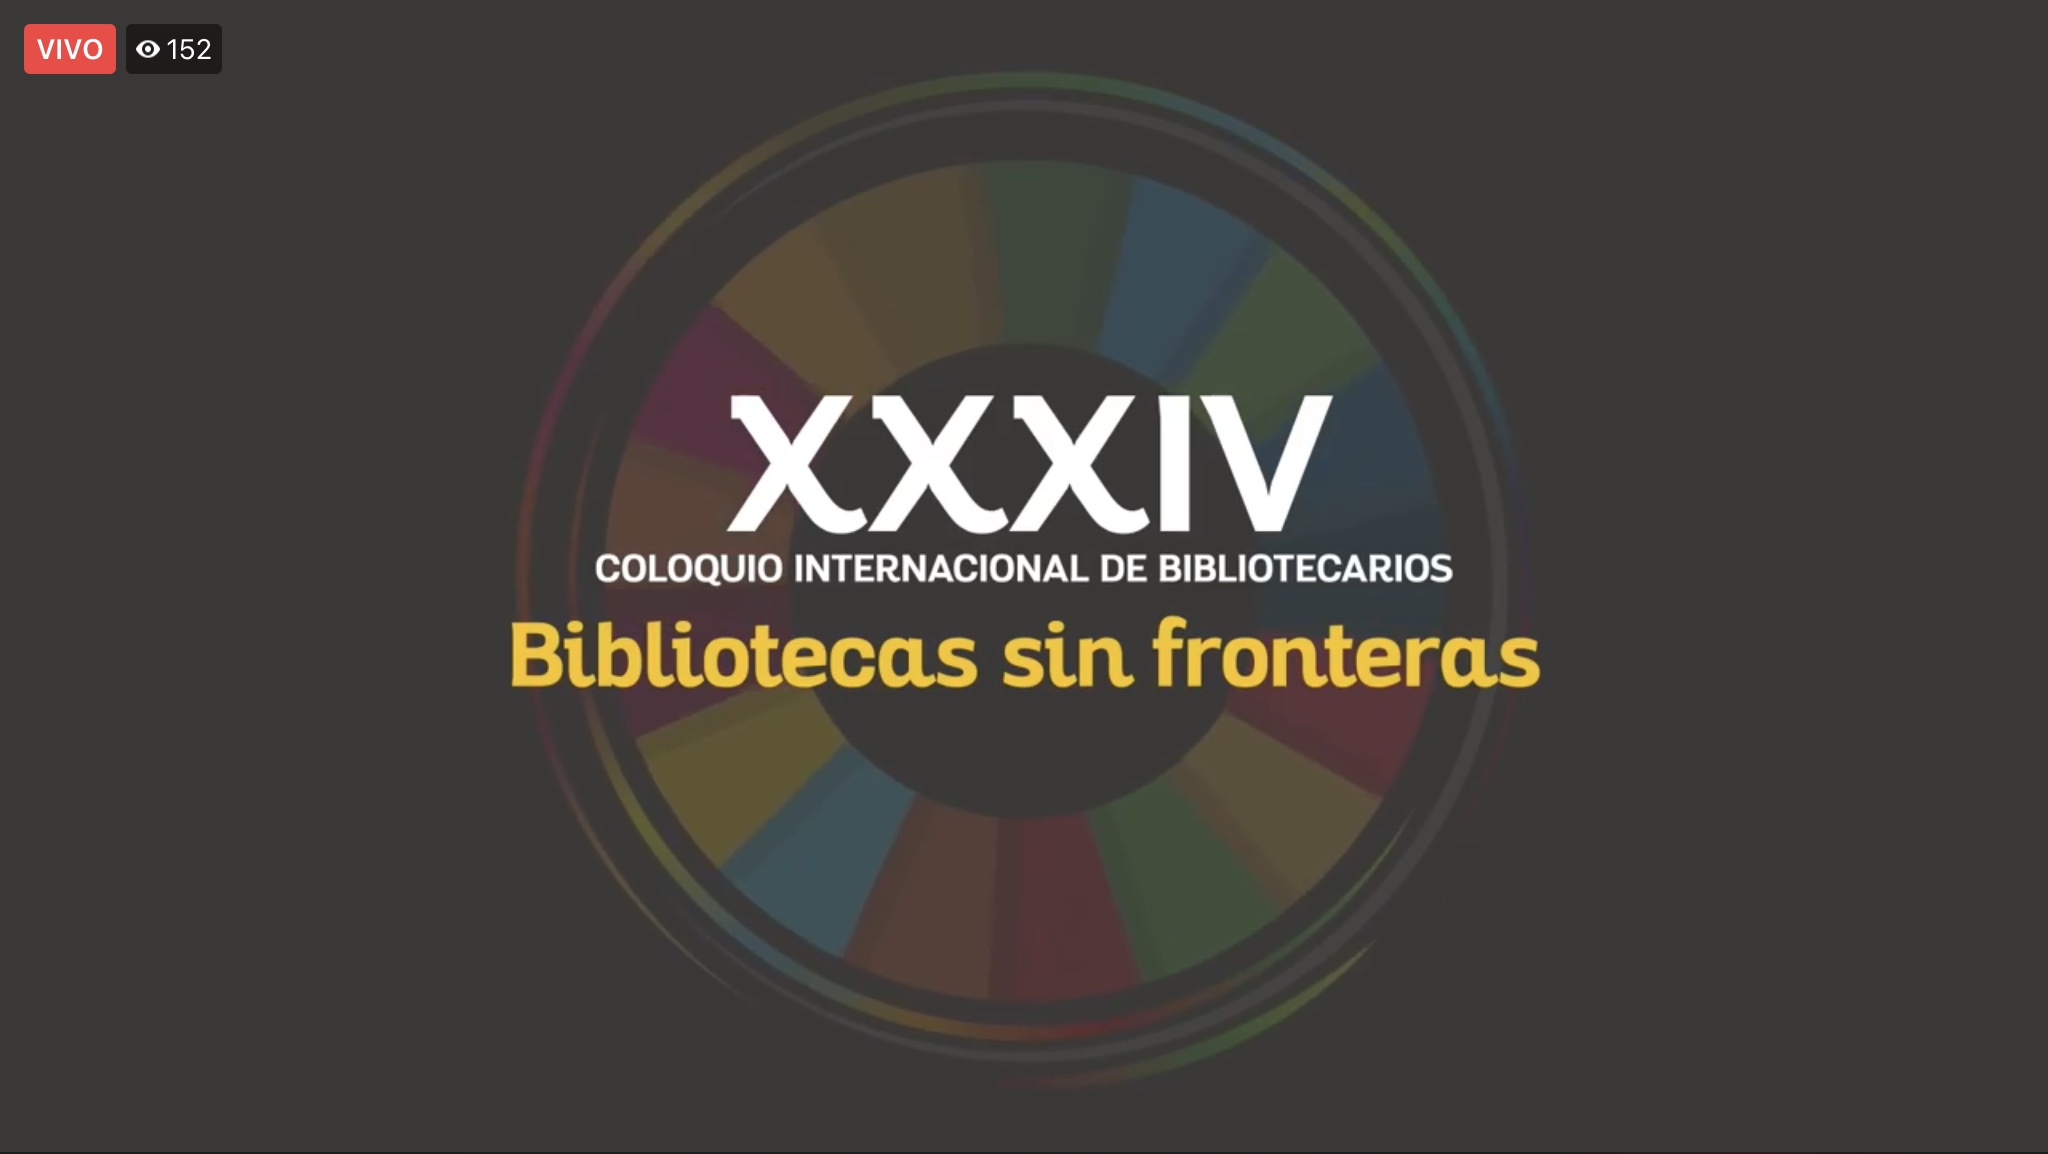 Cartel del XXXIV Coloquio Internacional de Bibliotecarios "Bibliotecas sin fronteras"